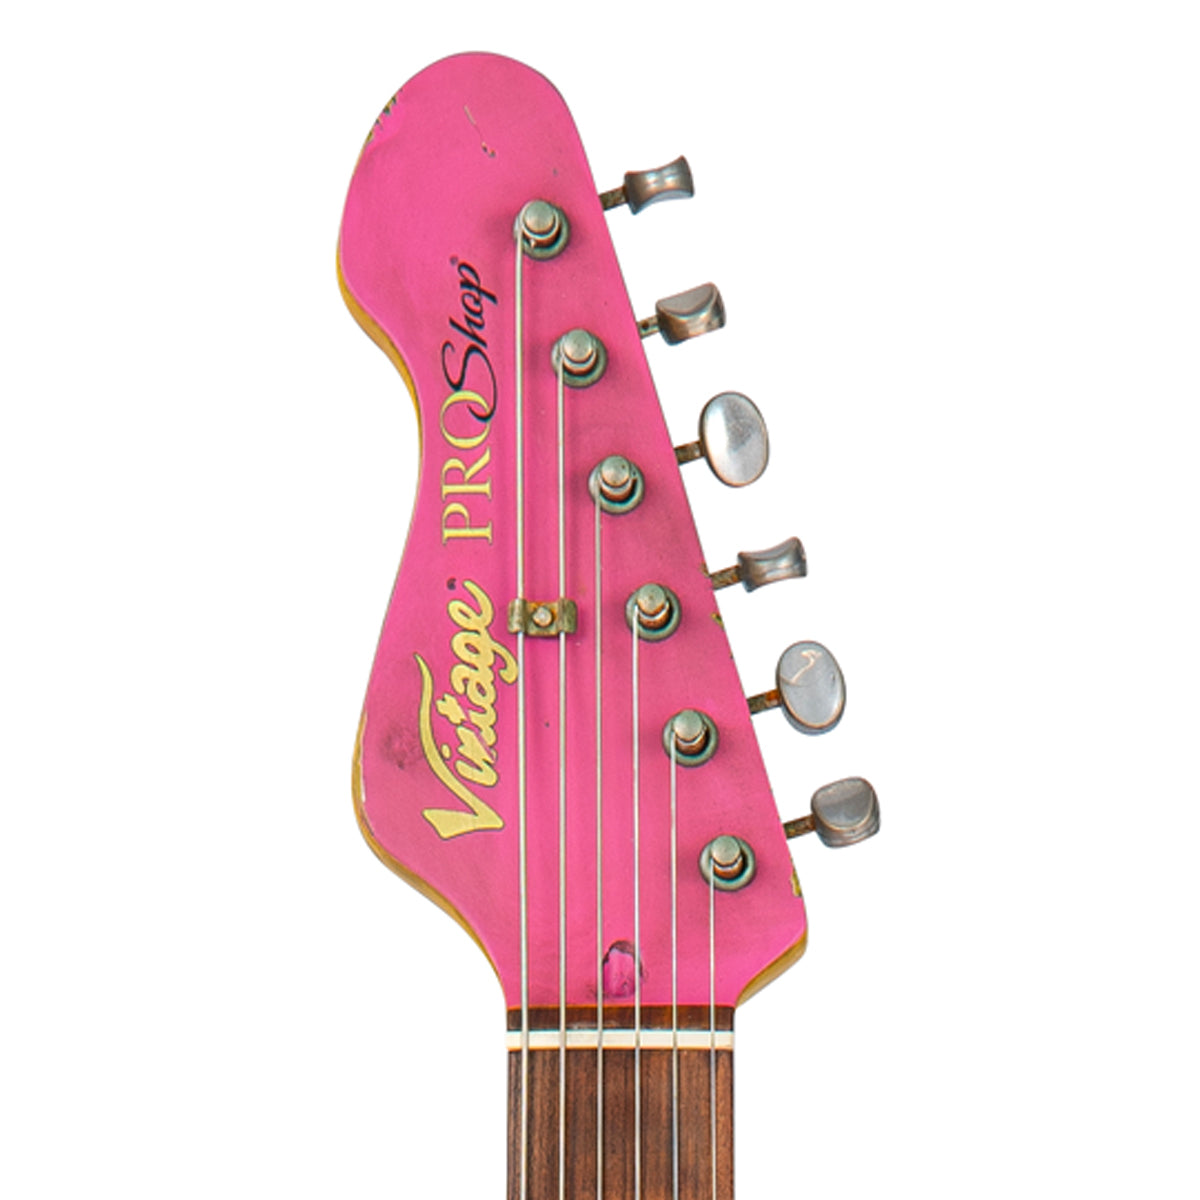 SOLD -  Vintage V65 ProShop Custom-Build ~ Heavy Distress ~ Bubblegum Pink Over Sunburst, Electric Guitars for sale at Richards Guitars.